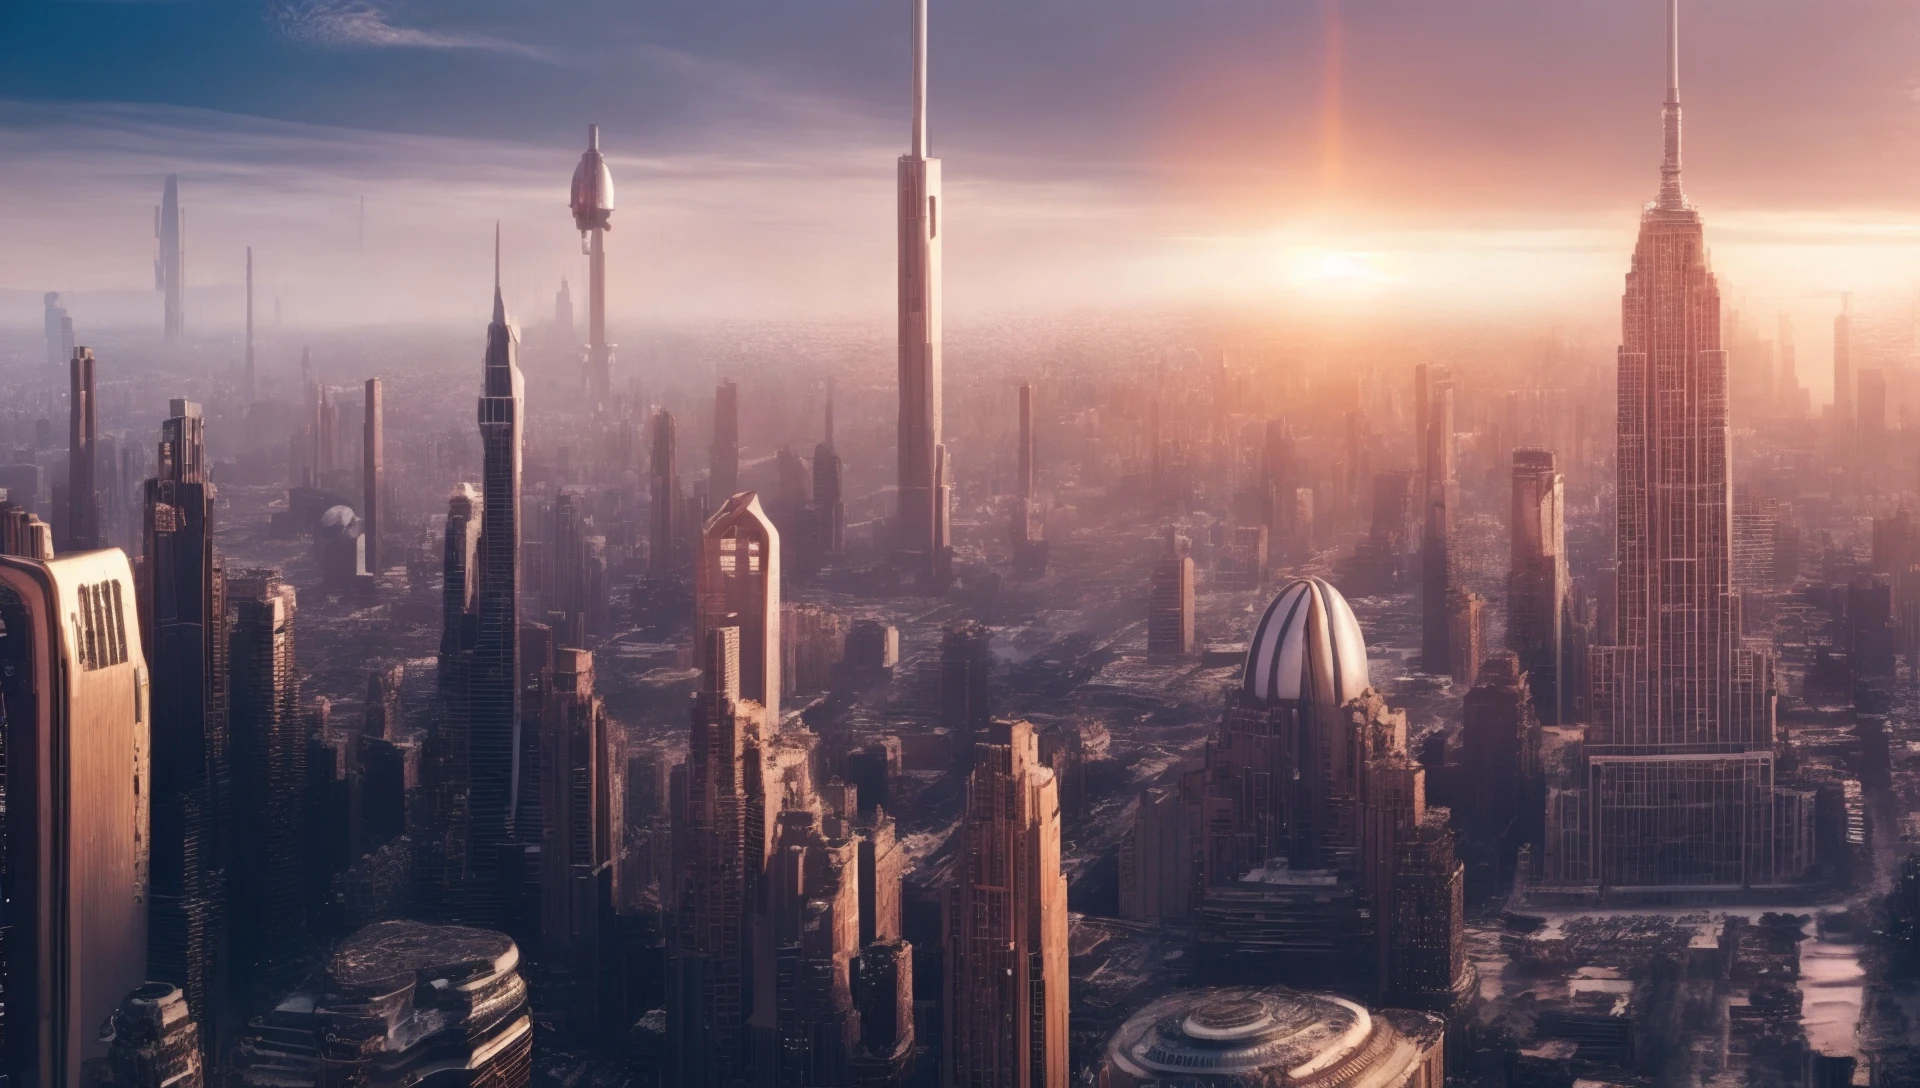 2 صورة لمنظر المدينة المستقبلي من الخيال العلمي, لقاءات قريبة من النوع الثالث